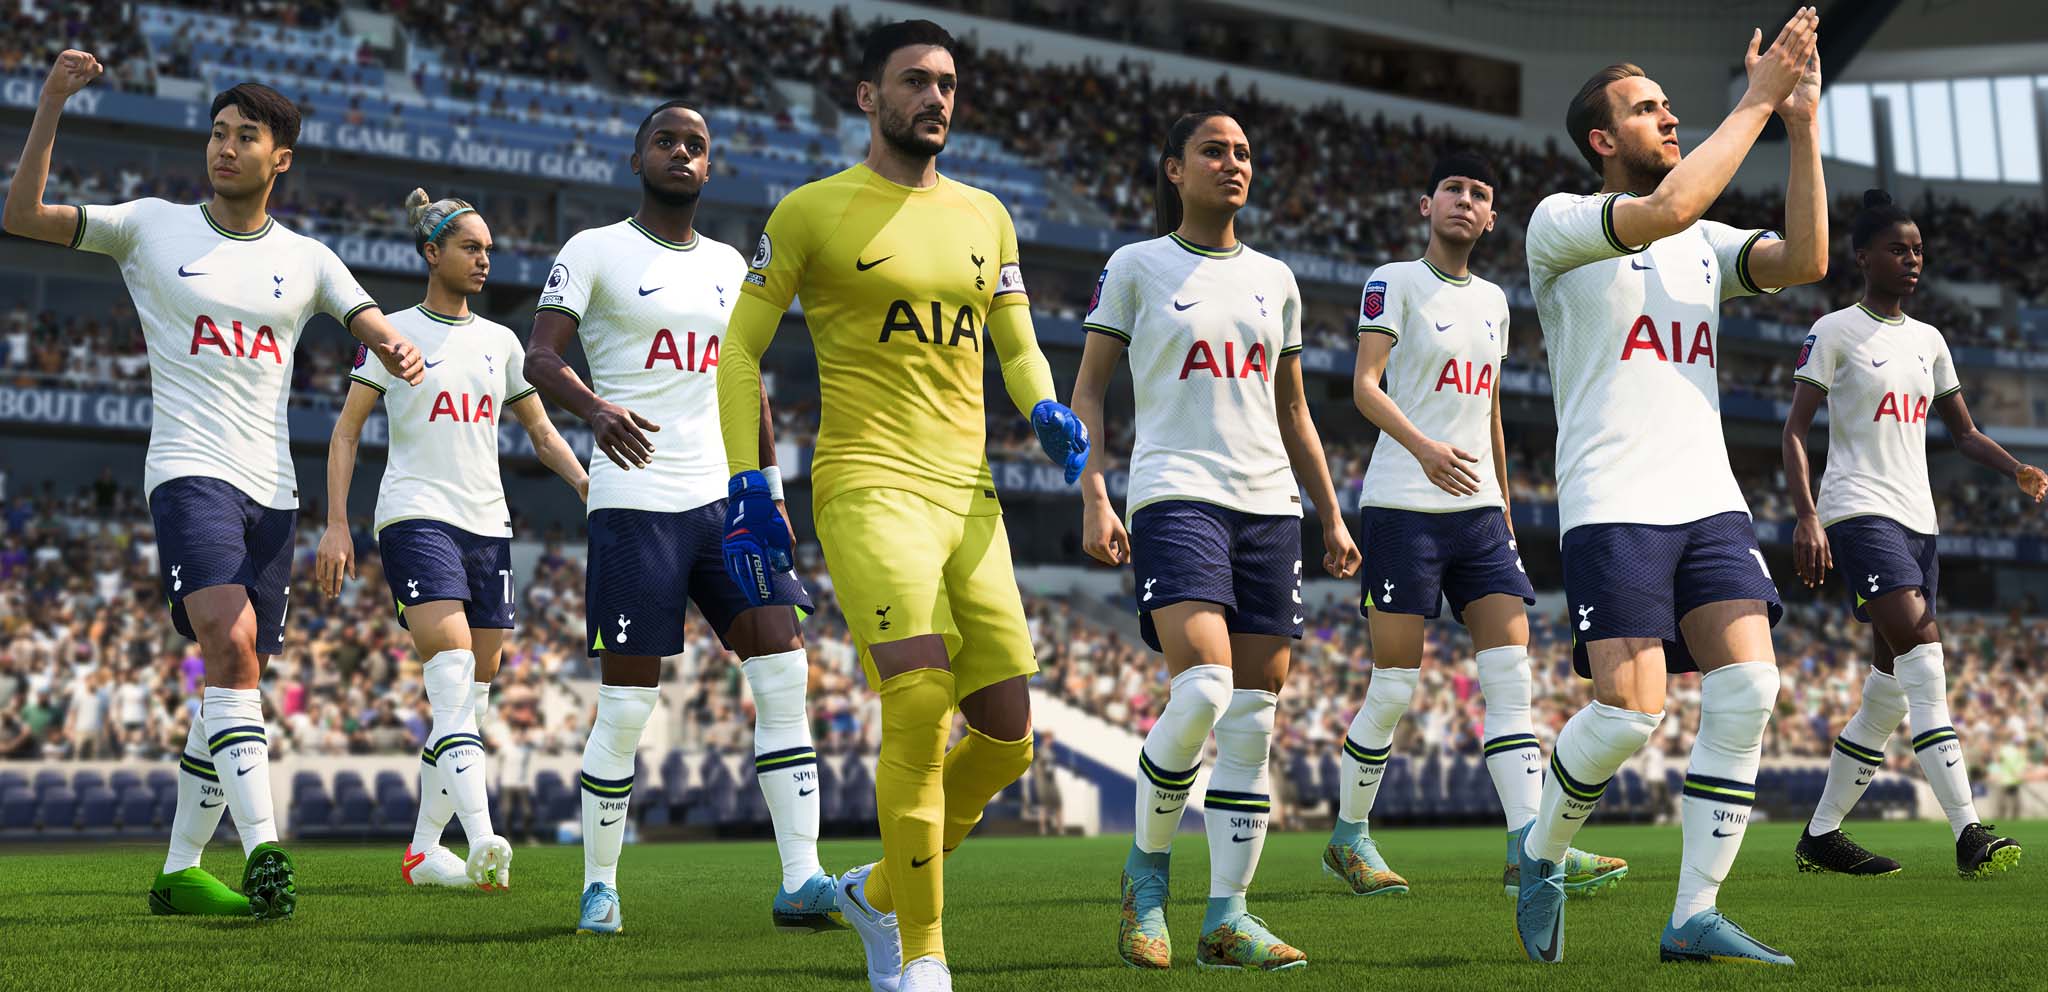 Tottenham Hotspur F.C. EA FC 24 Roster (Premier League)